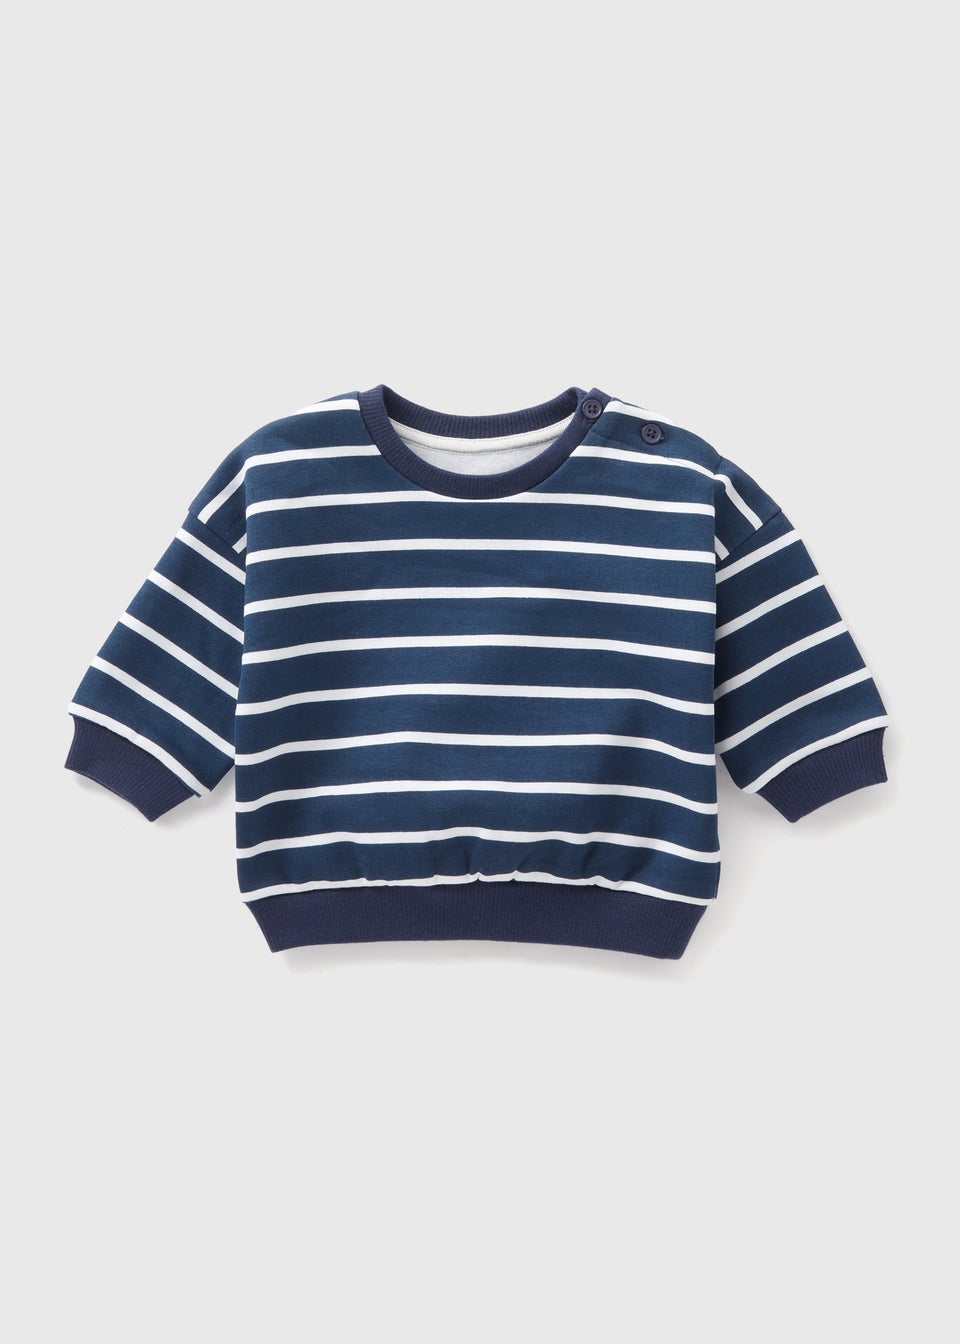 Baby Navy Striped Sweatshirt (Newborn-23mths)